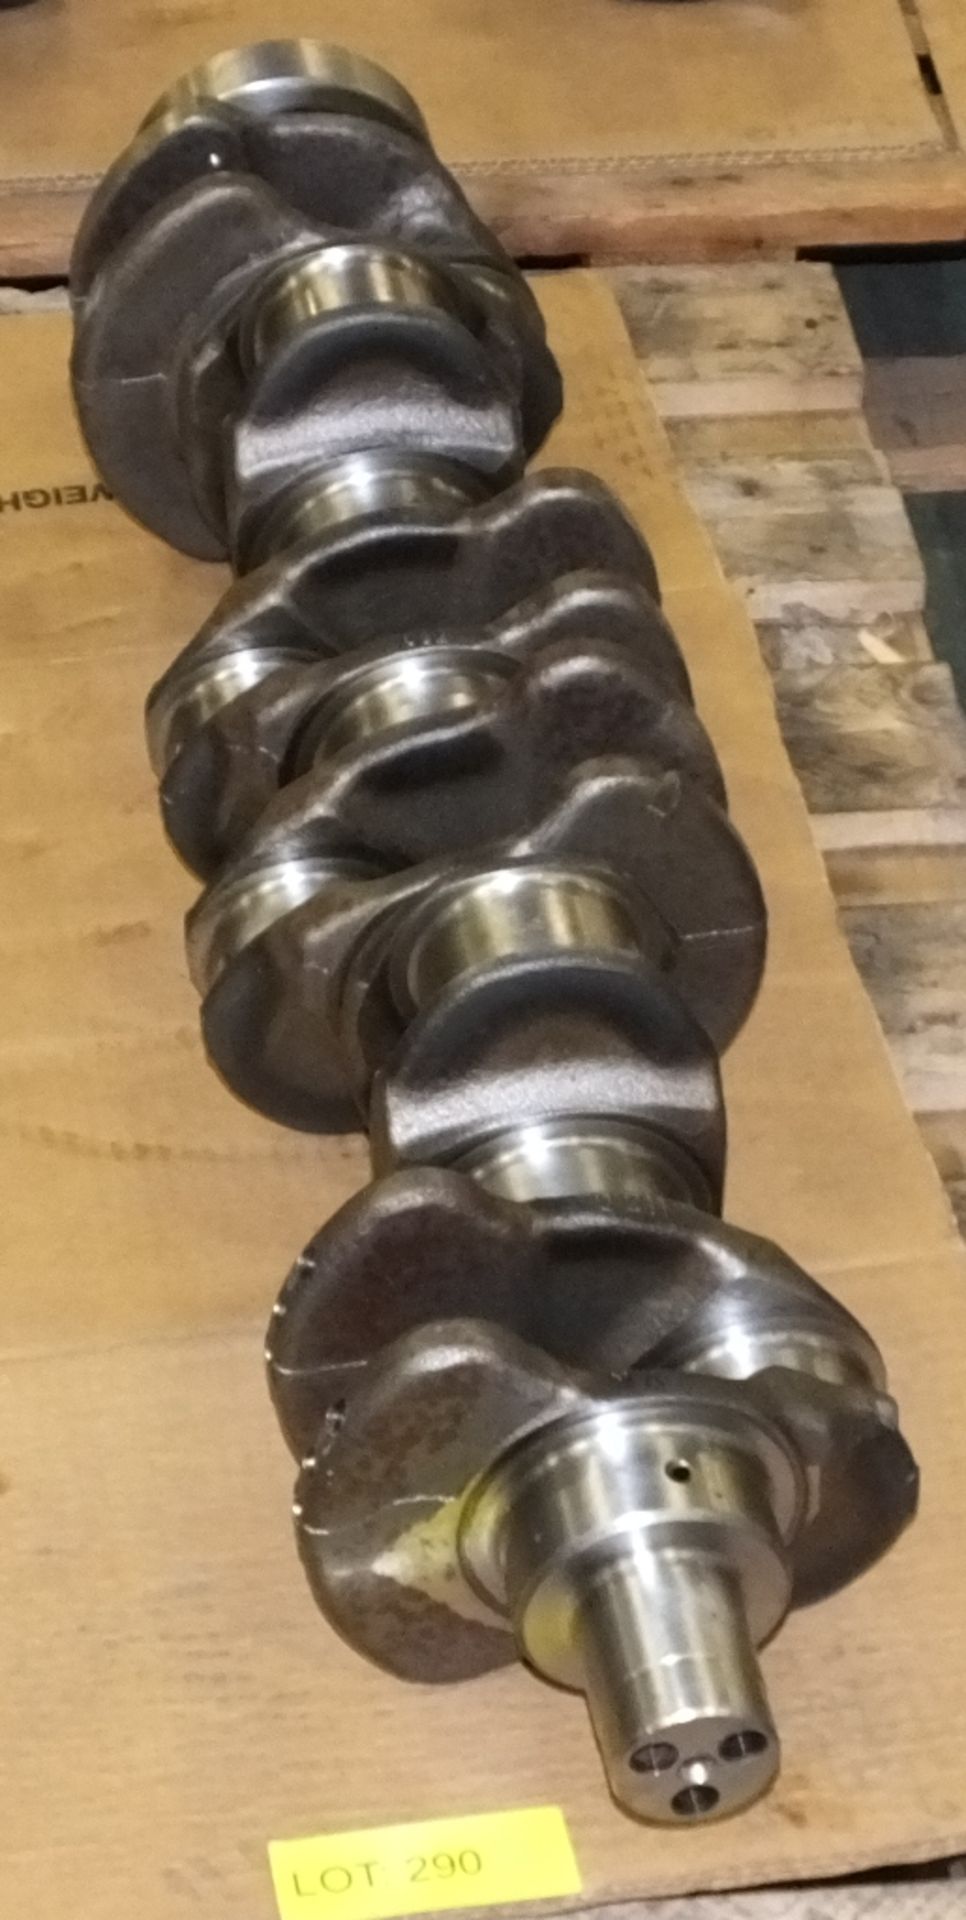 6 cylinder crankshaft for Perkins 6354 engine - Image 2 of 2